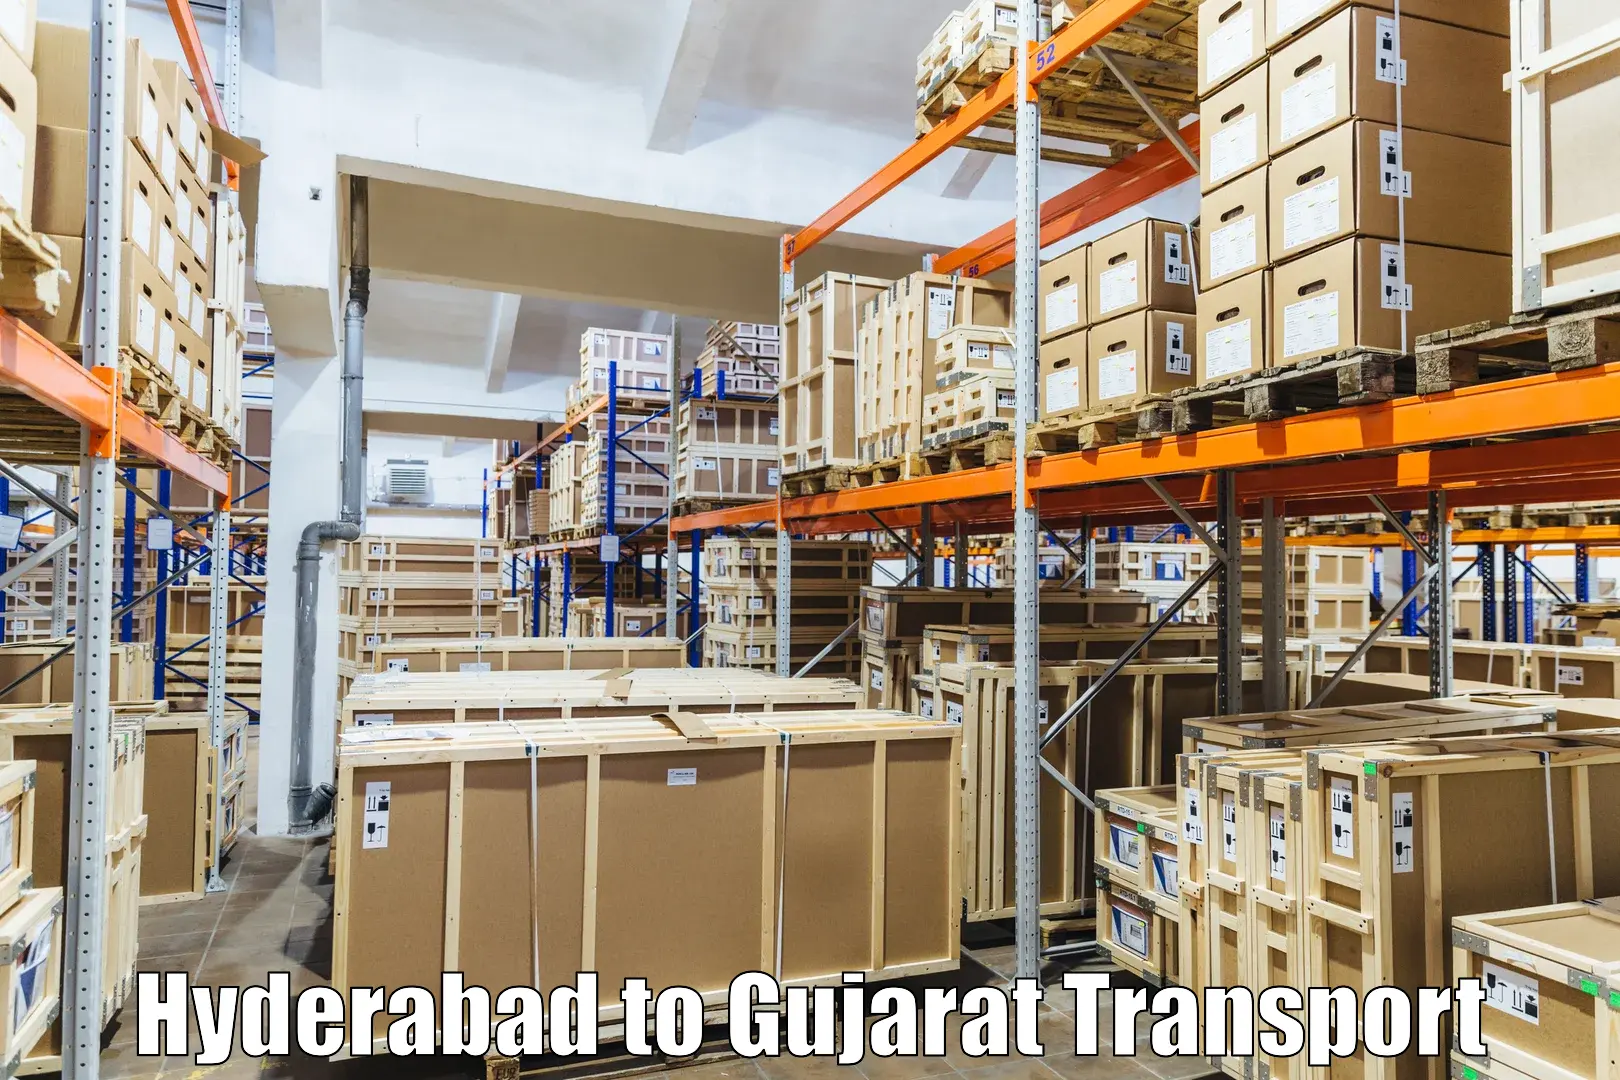 Online transport booking Hyderabad to IIIT Surat